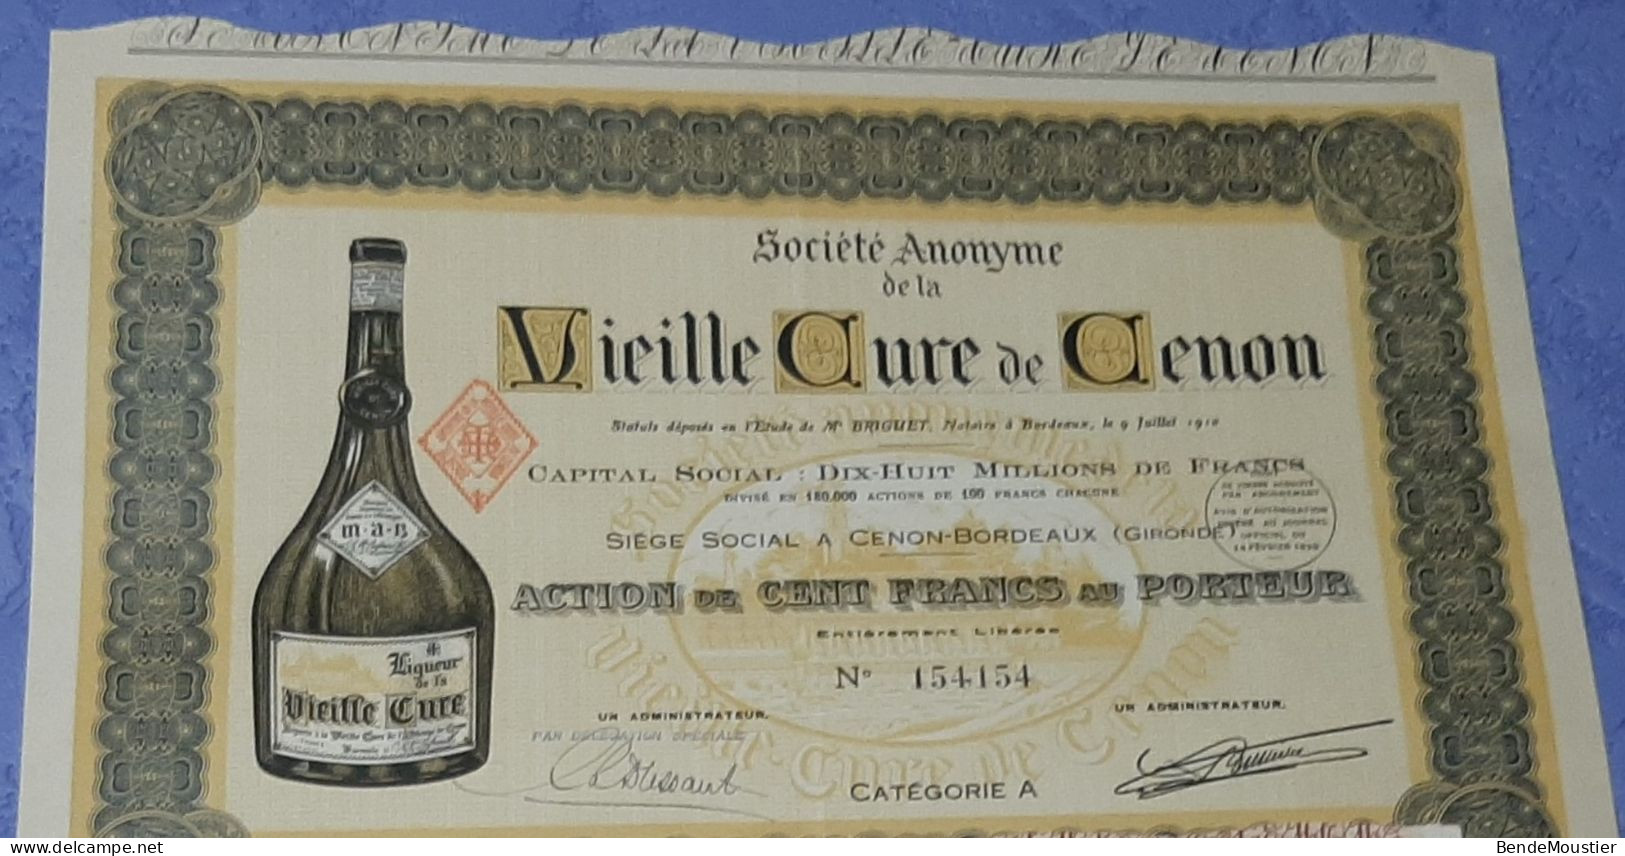 Vieille Cure De Cenon - Action De 2500 Frs - Action De 100 Frs Au Porteur - Cenon-Bordeaux - Gironde 1910 & 1952. - Agricoltura